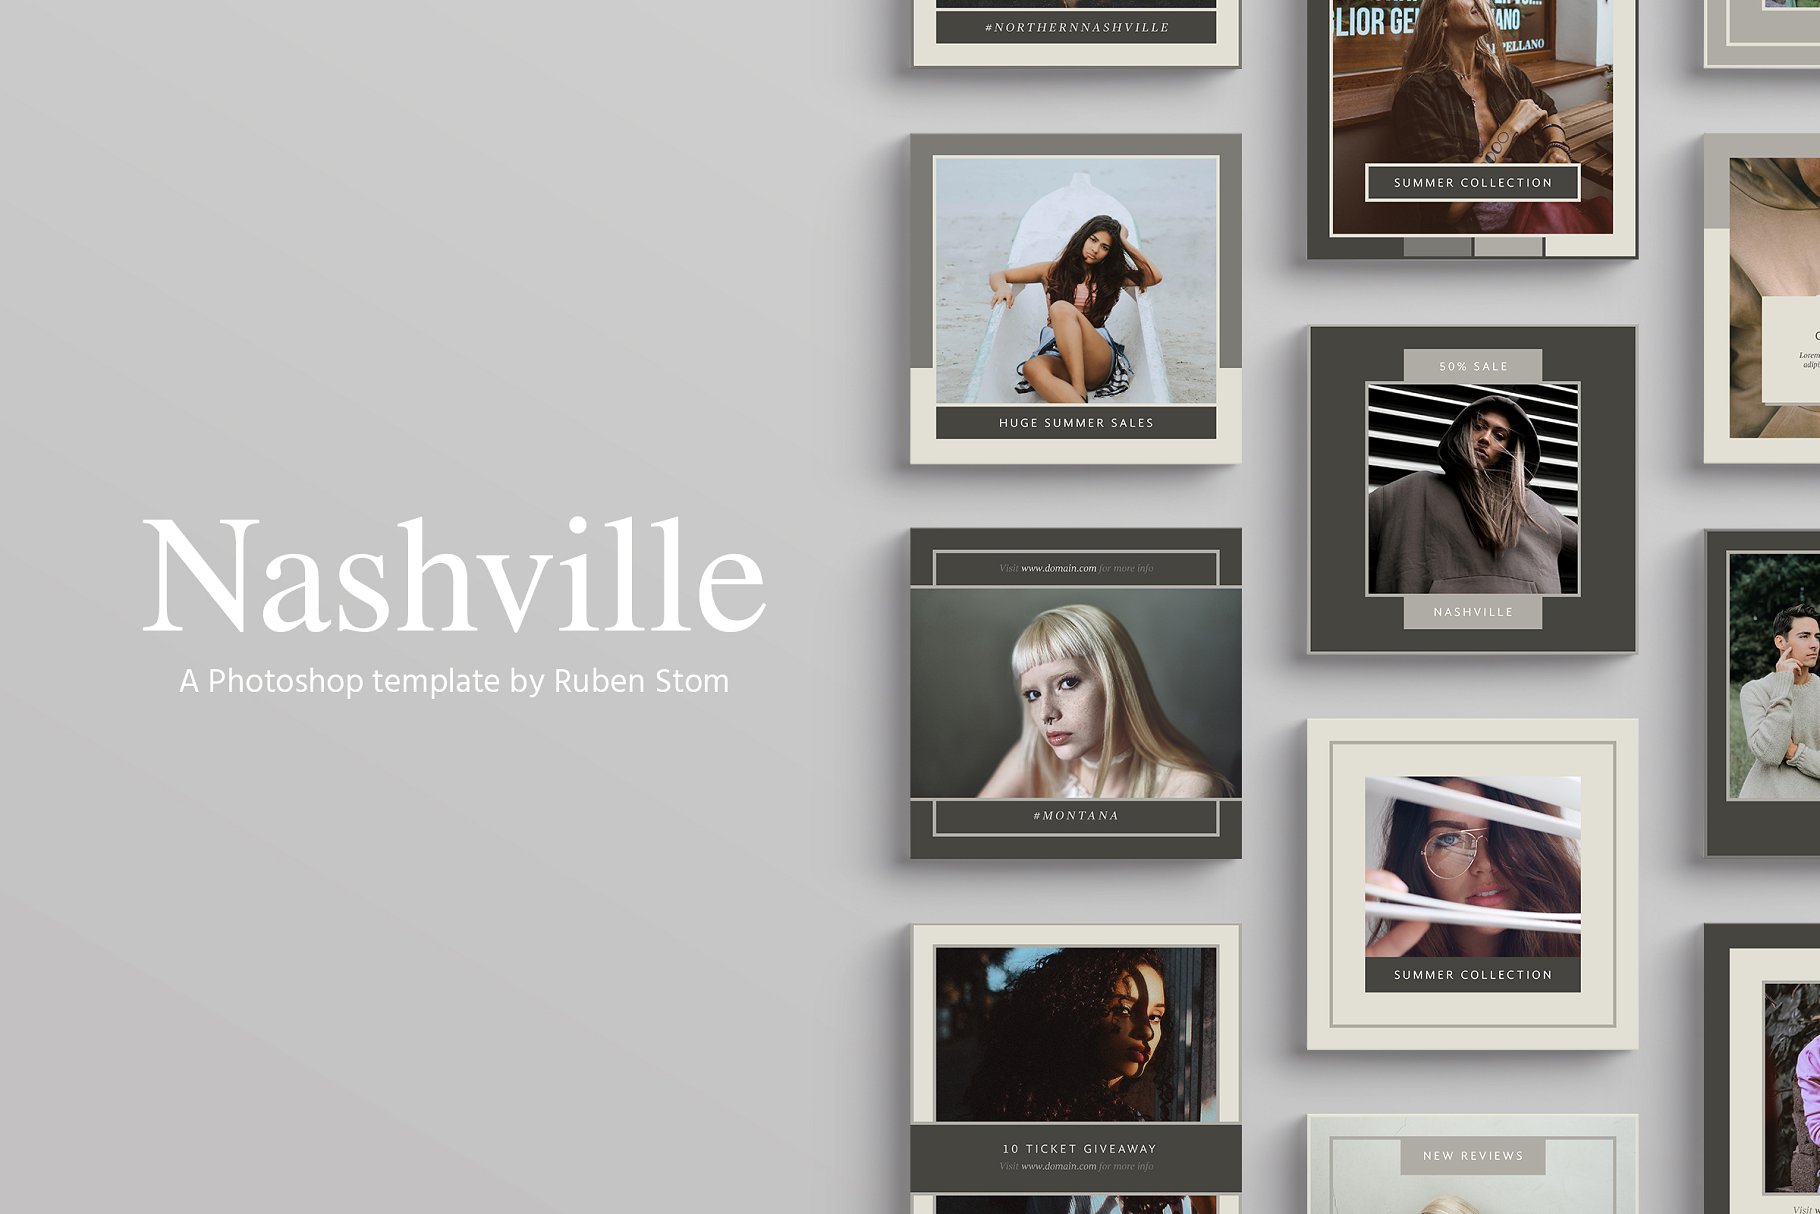 时尚模特摄影主题社交媒体贴图模板第一素材精选 Nashville Social Media Templates插图